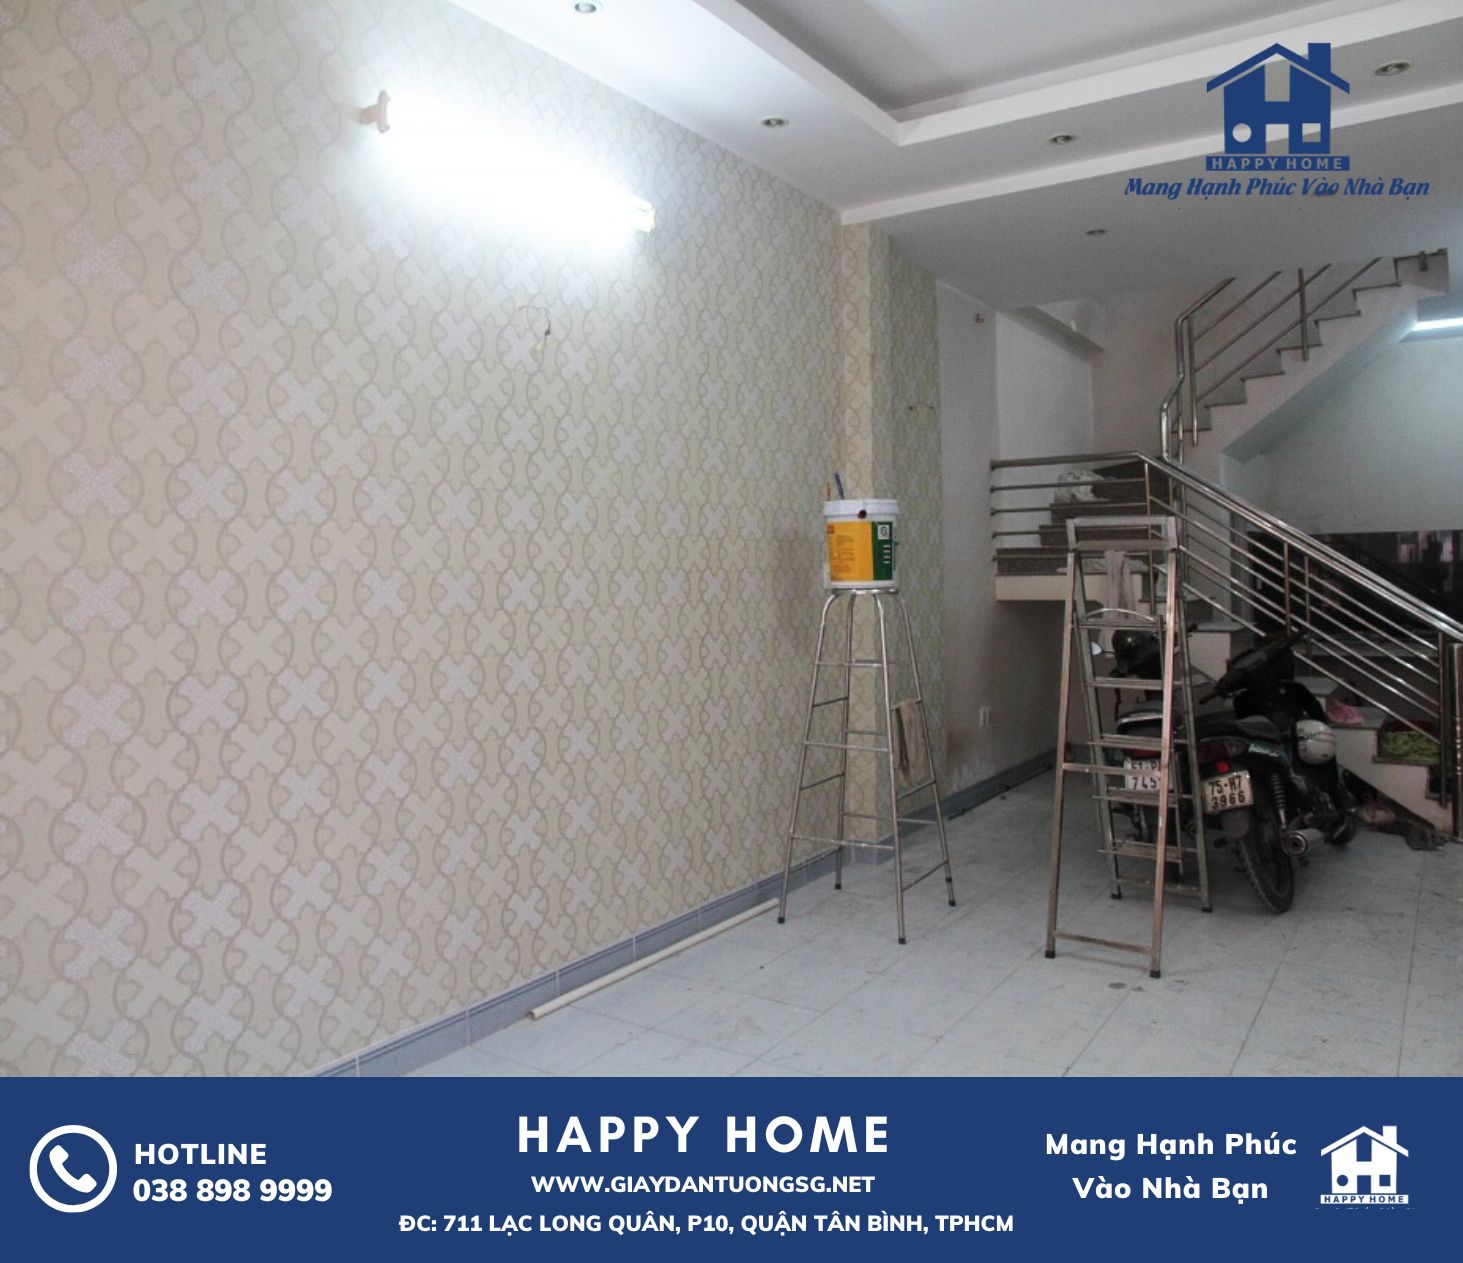 Khám phá bộ sưu tập giấy dán tường của Happy Home cho căn hộ nhà anh Thái